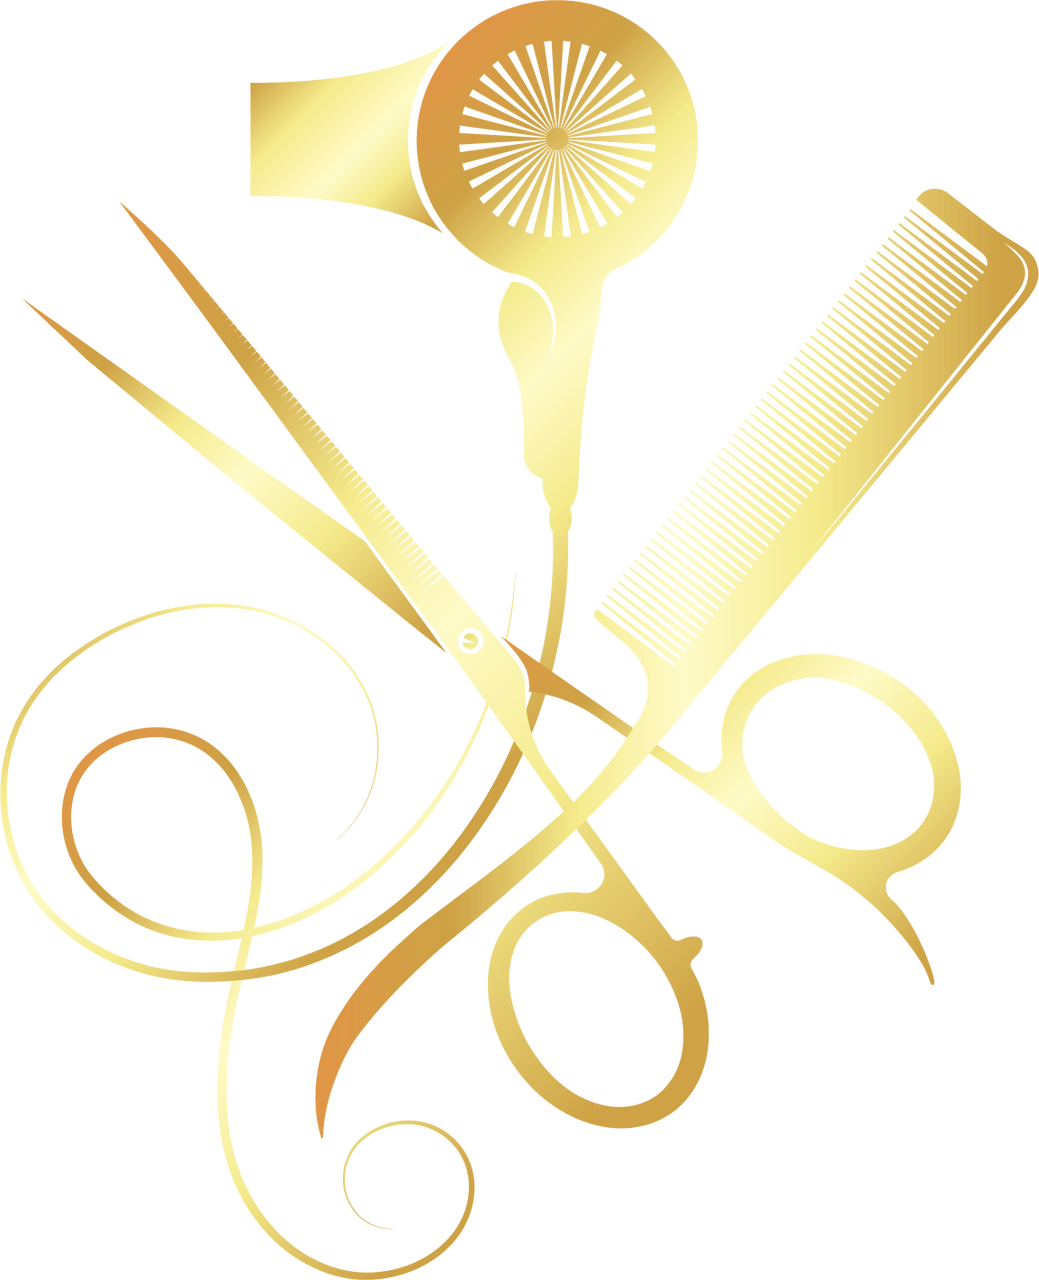 Scissors comb and hair dryer golden symbol